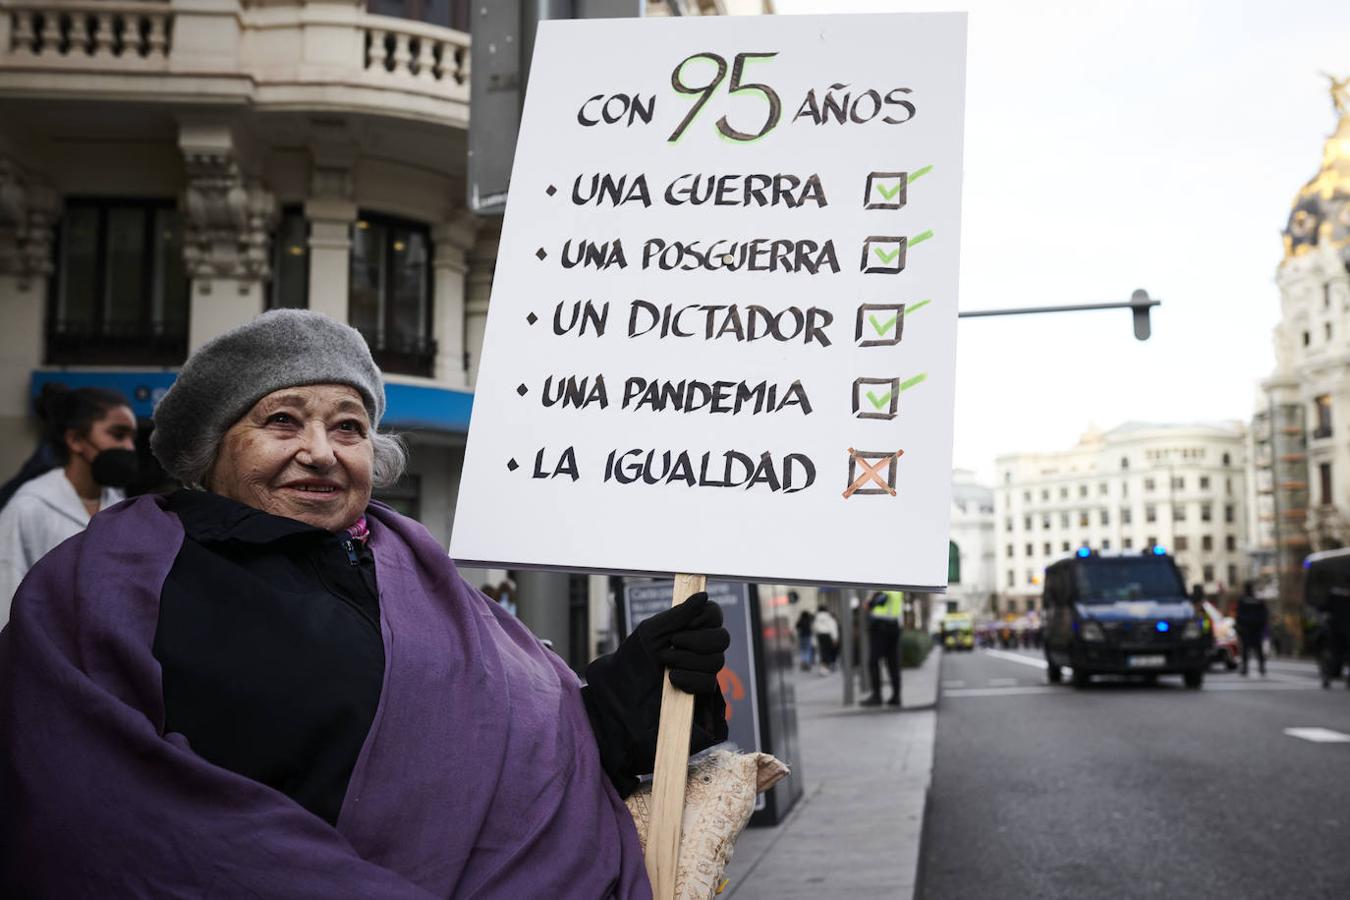 Una mujer porta un cartel en la marcha feminista de Madrid en la que tacha la igualdad como una de las cosas que no se han cumplido en sus 95 años